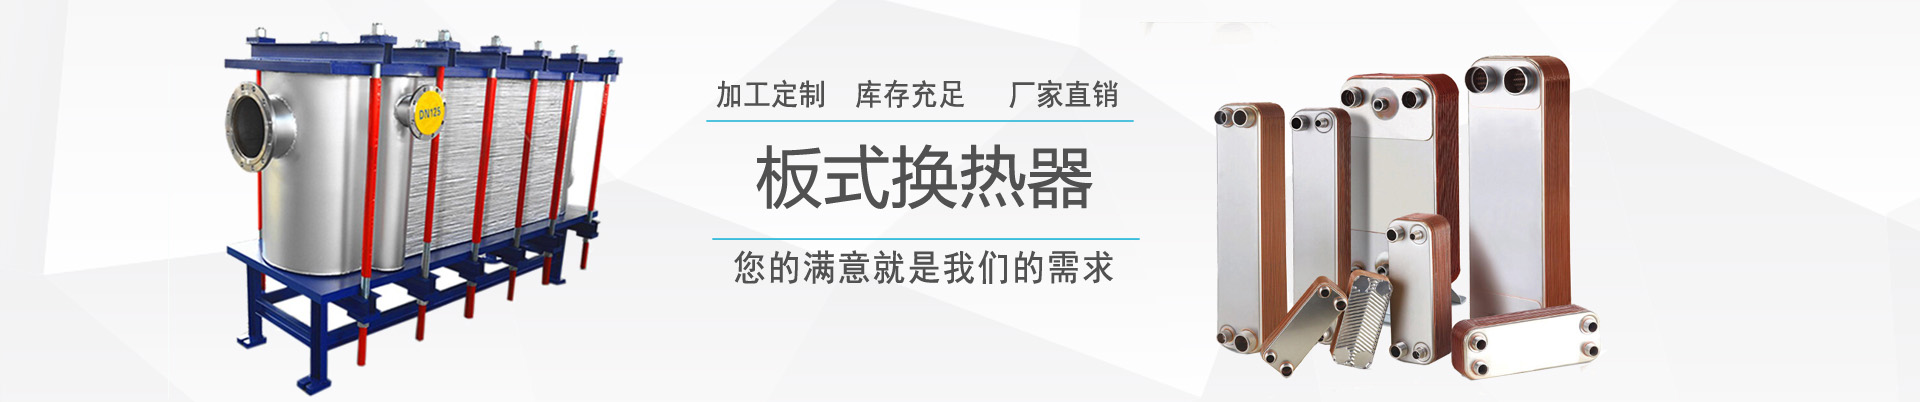 換熱機組 - 產品中心 - ,換熱器,板式換熱器,換熱器機組,上海將星化工設備有限公司